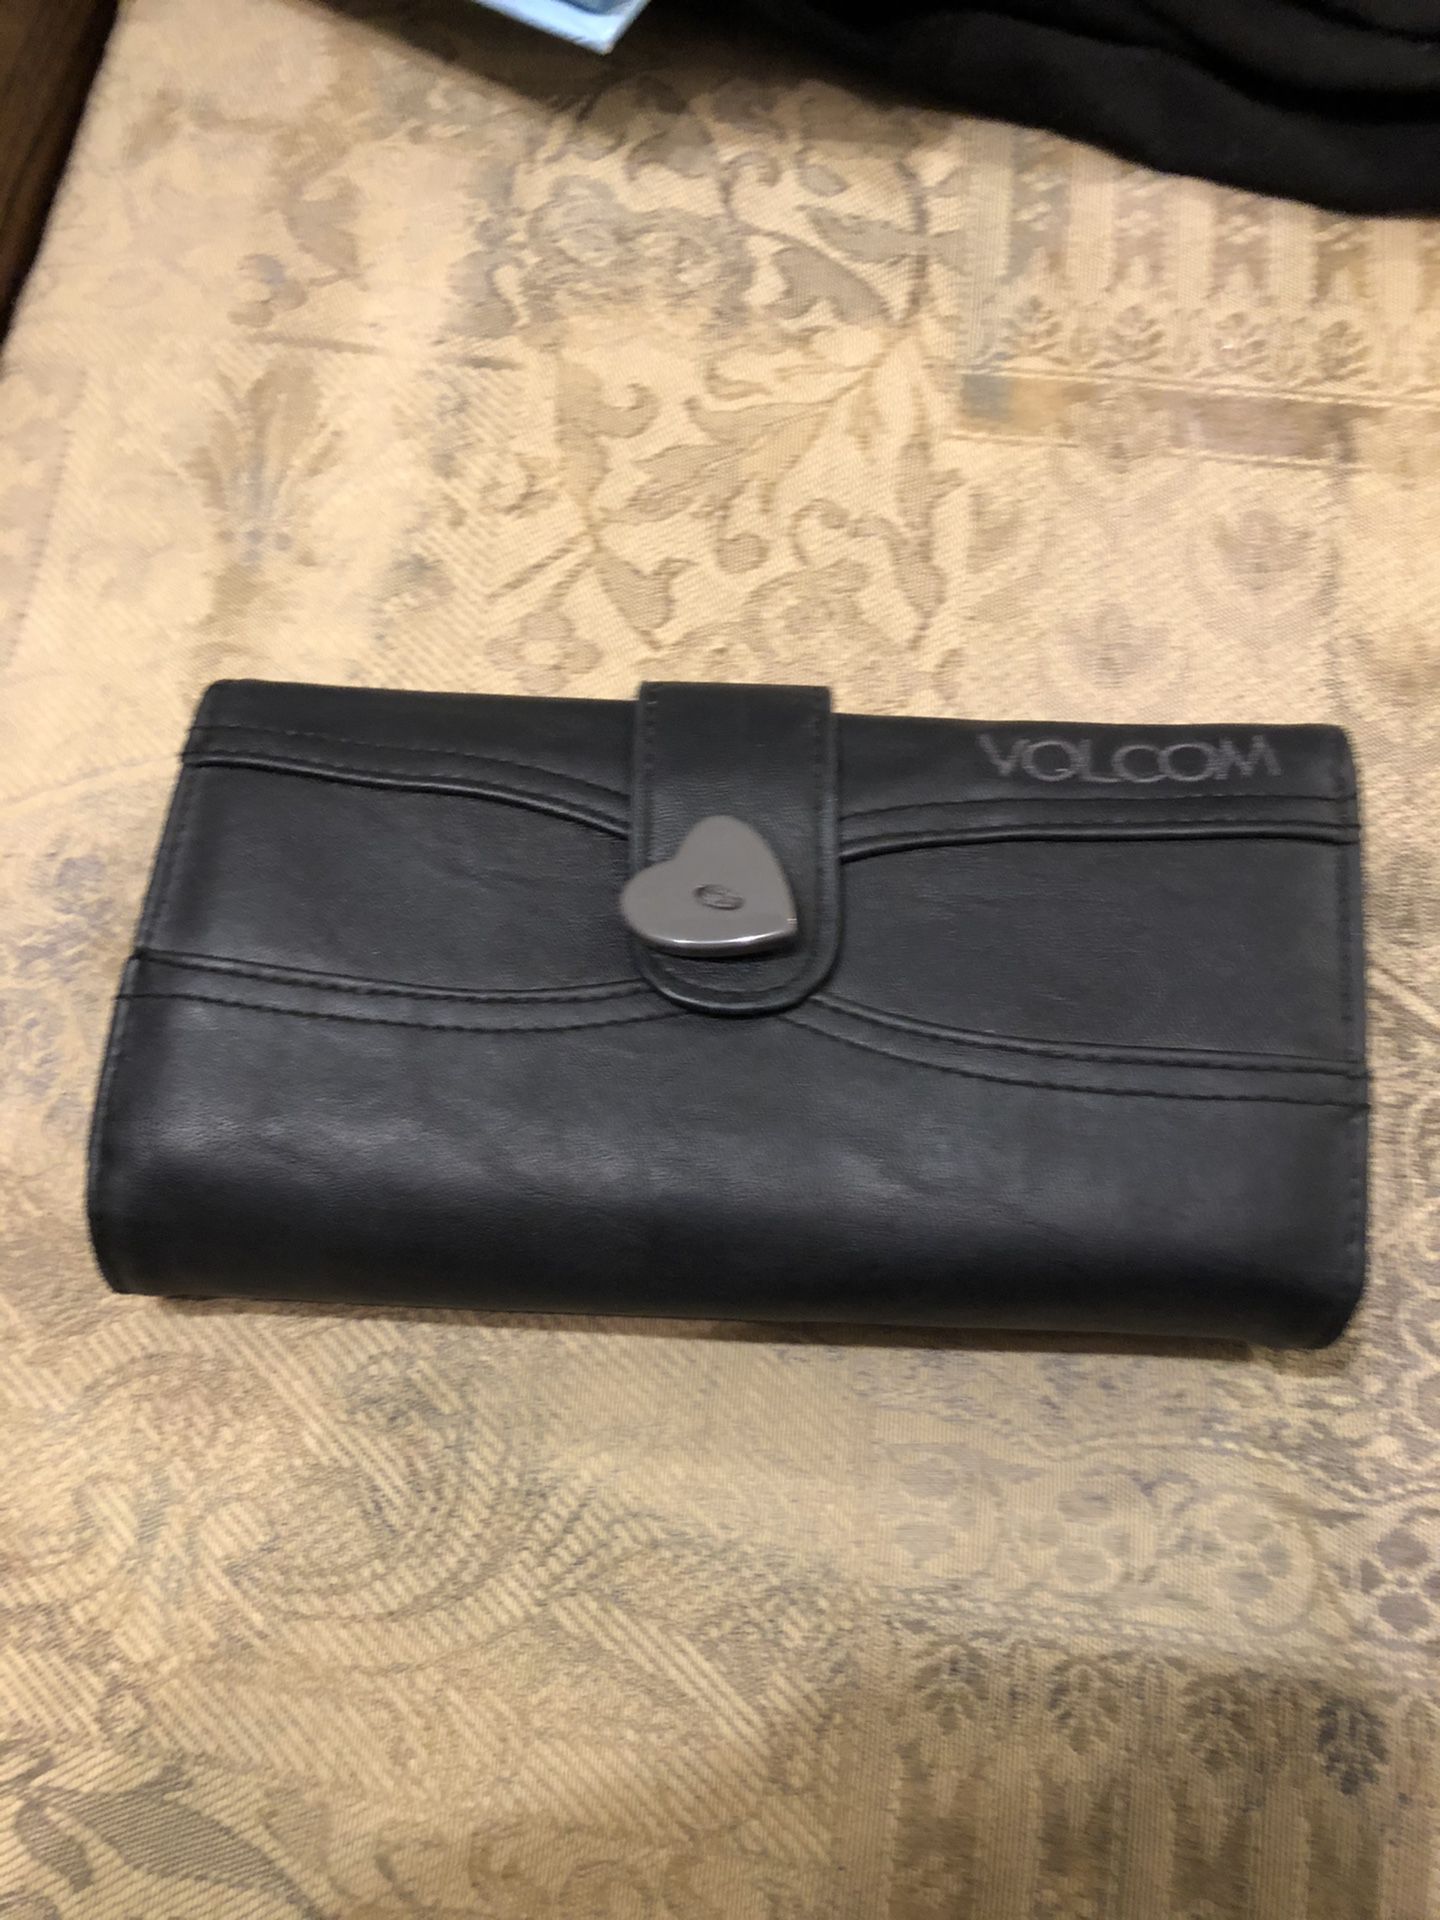 Volcom women’s wallet